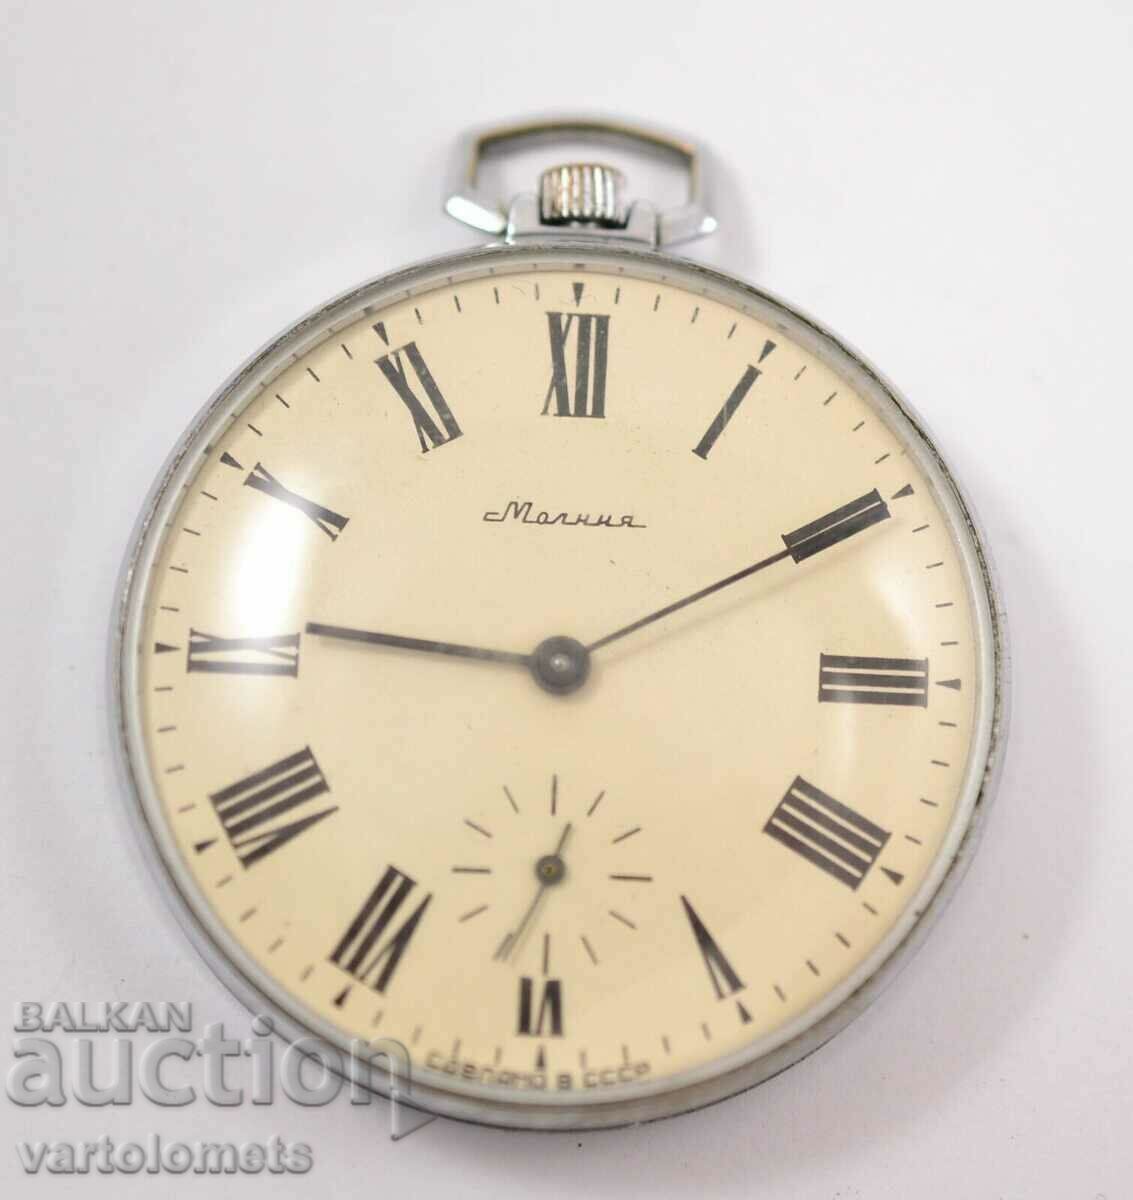 MOLNIYA USSR pocket watch - works